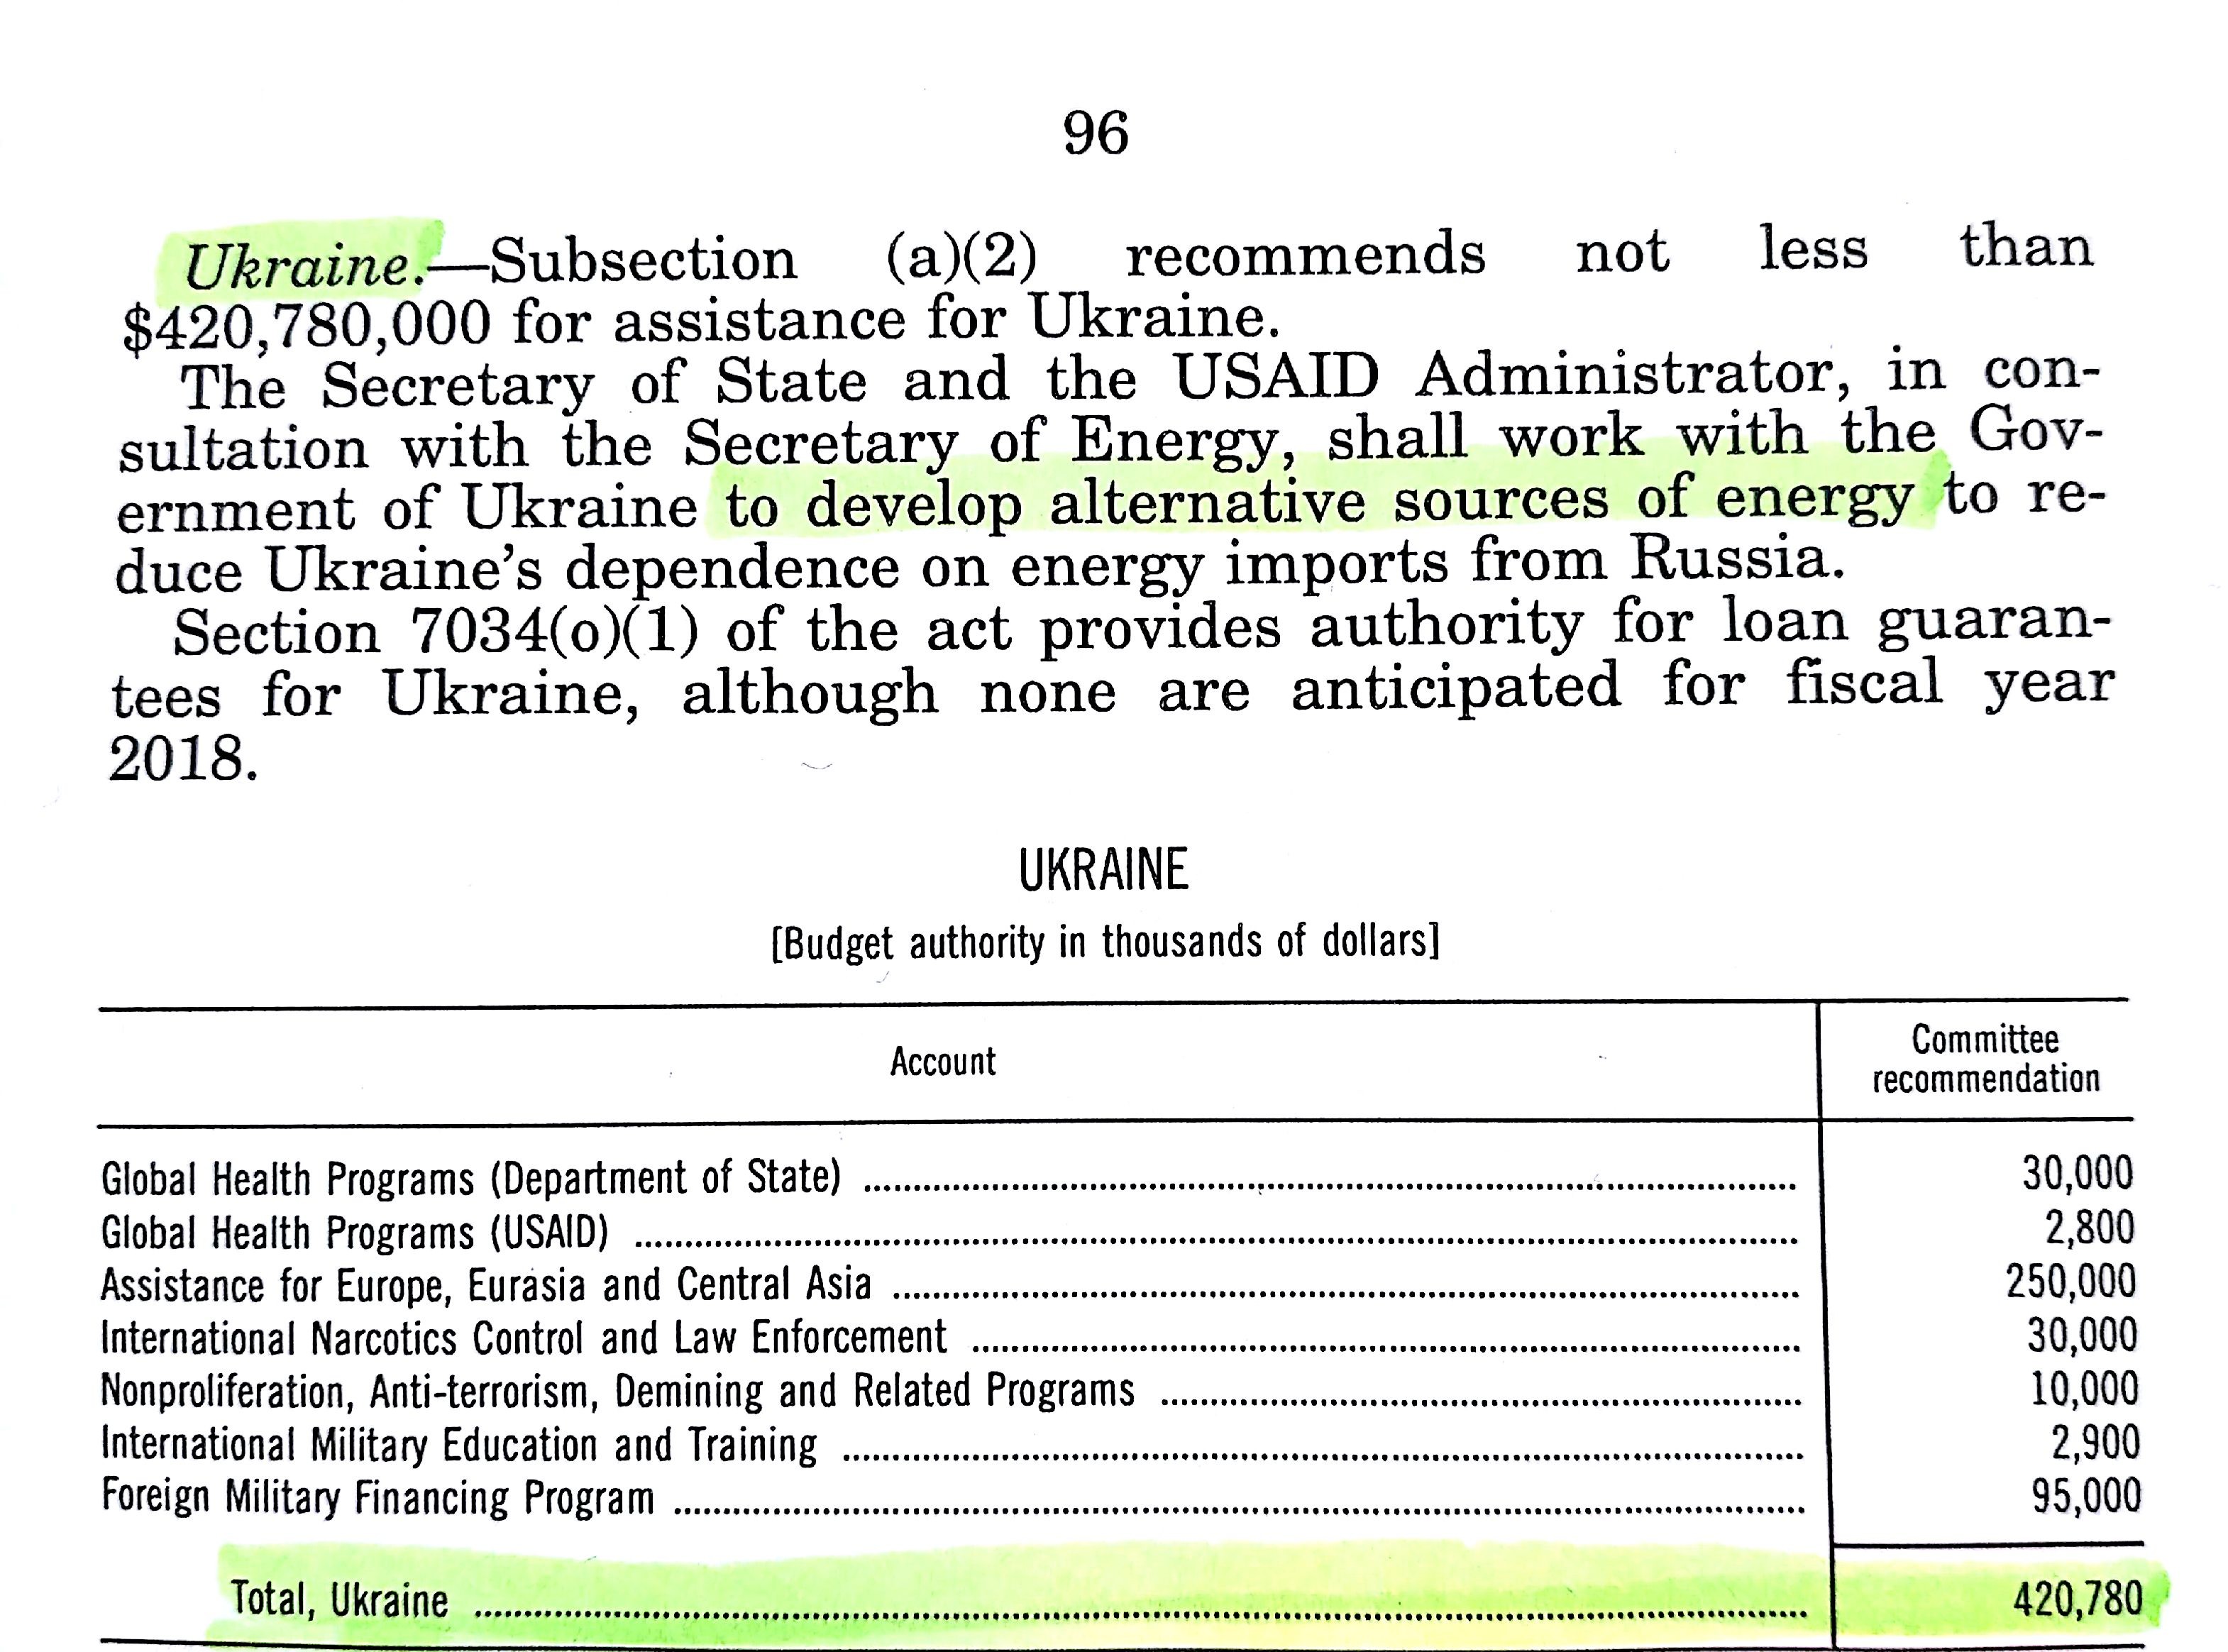 Рекомендации Комитета по ассигнованиям касательно финансирования Украины. Фото: © L!FE.